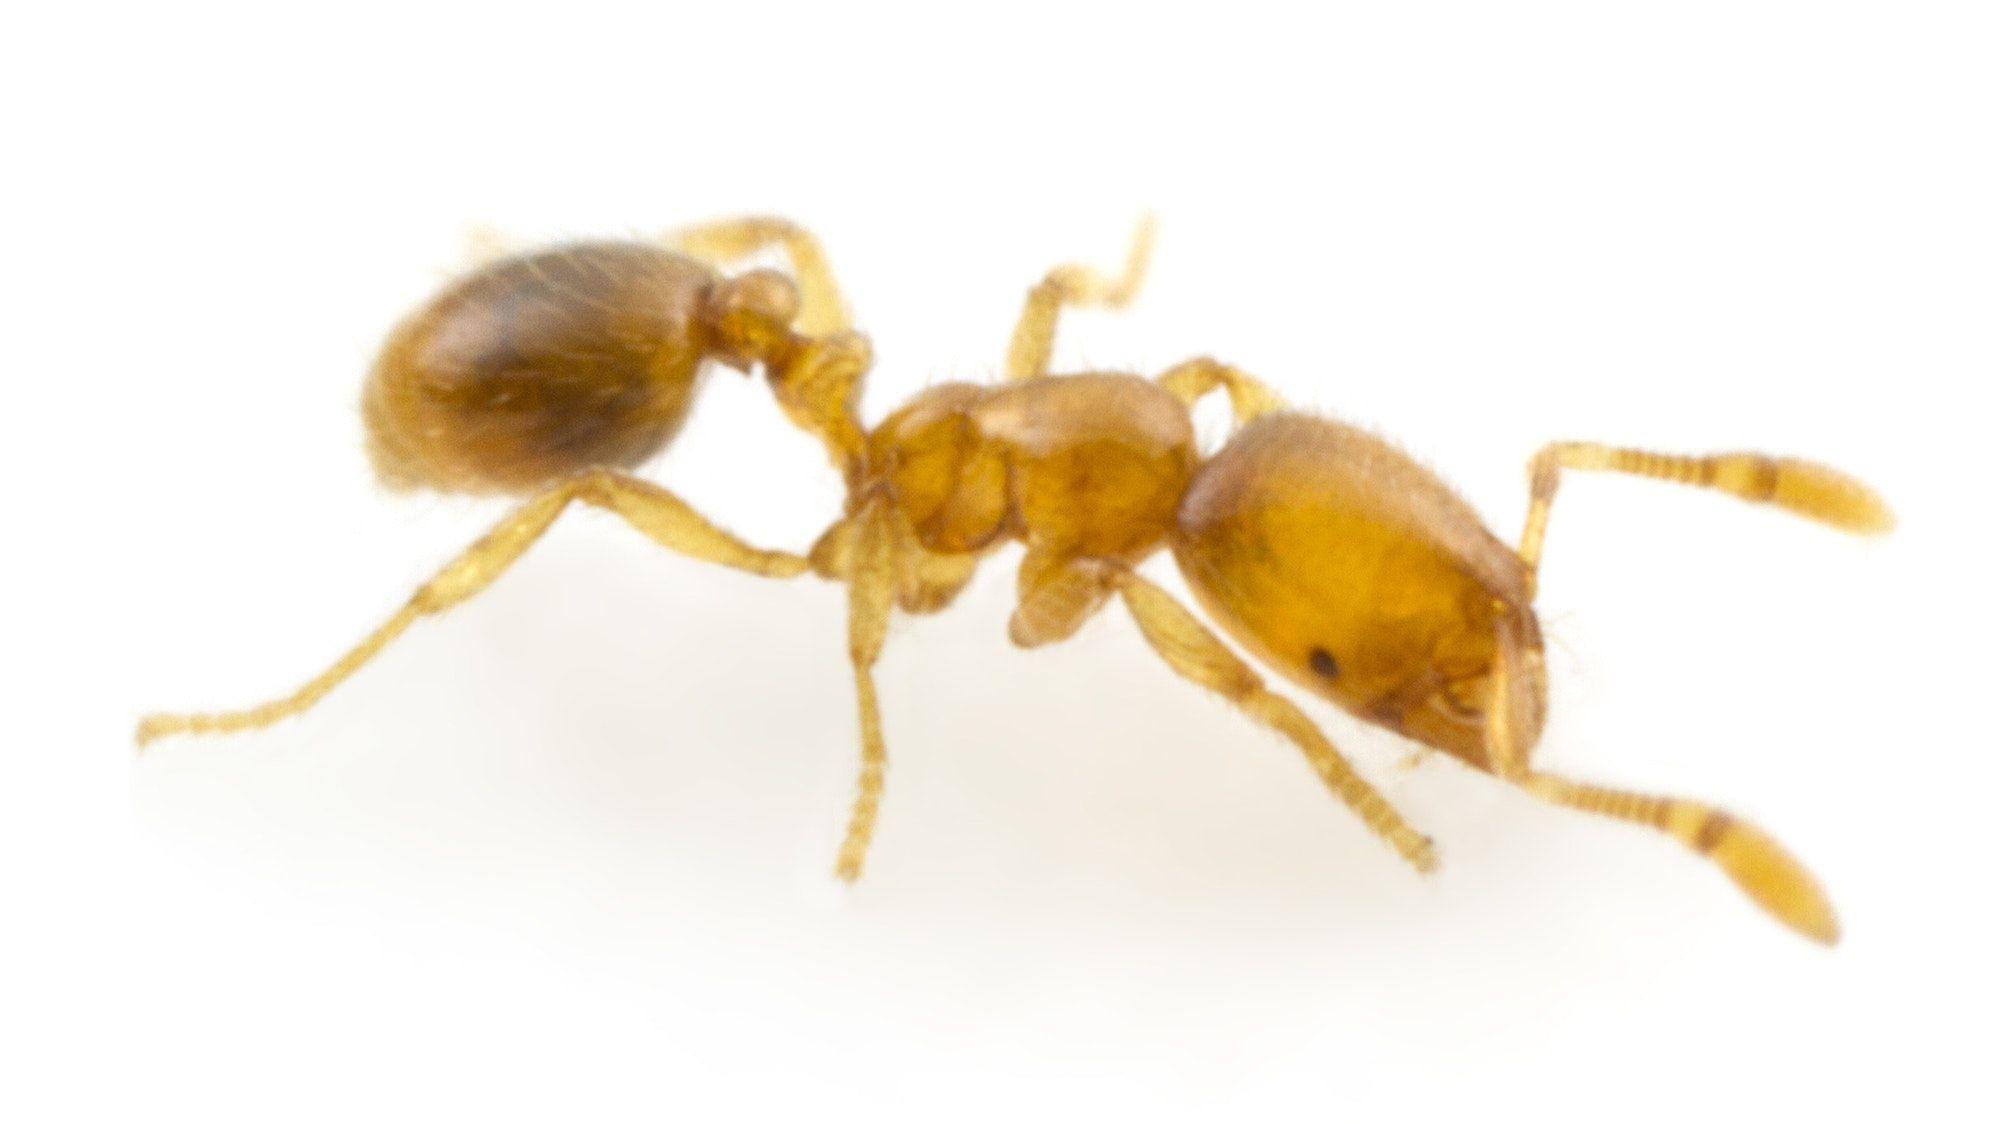 Разработать новые антибиотики учёным помогут муравьи